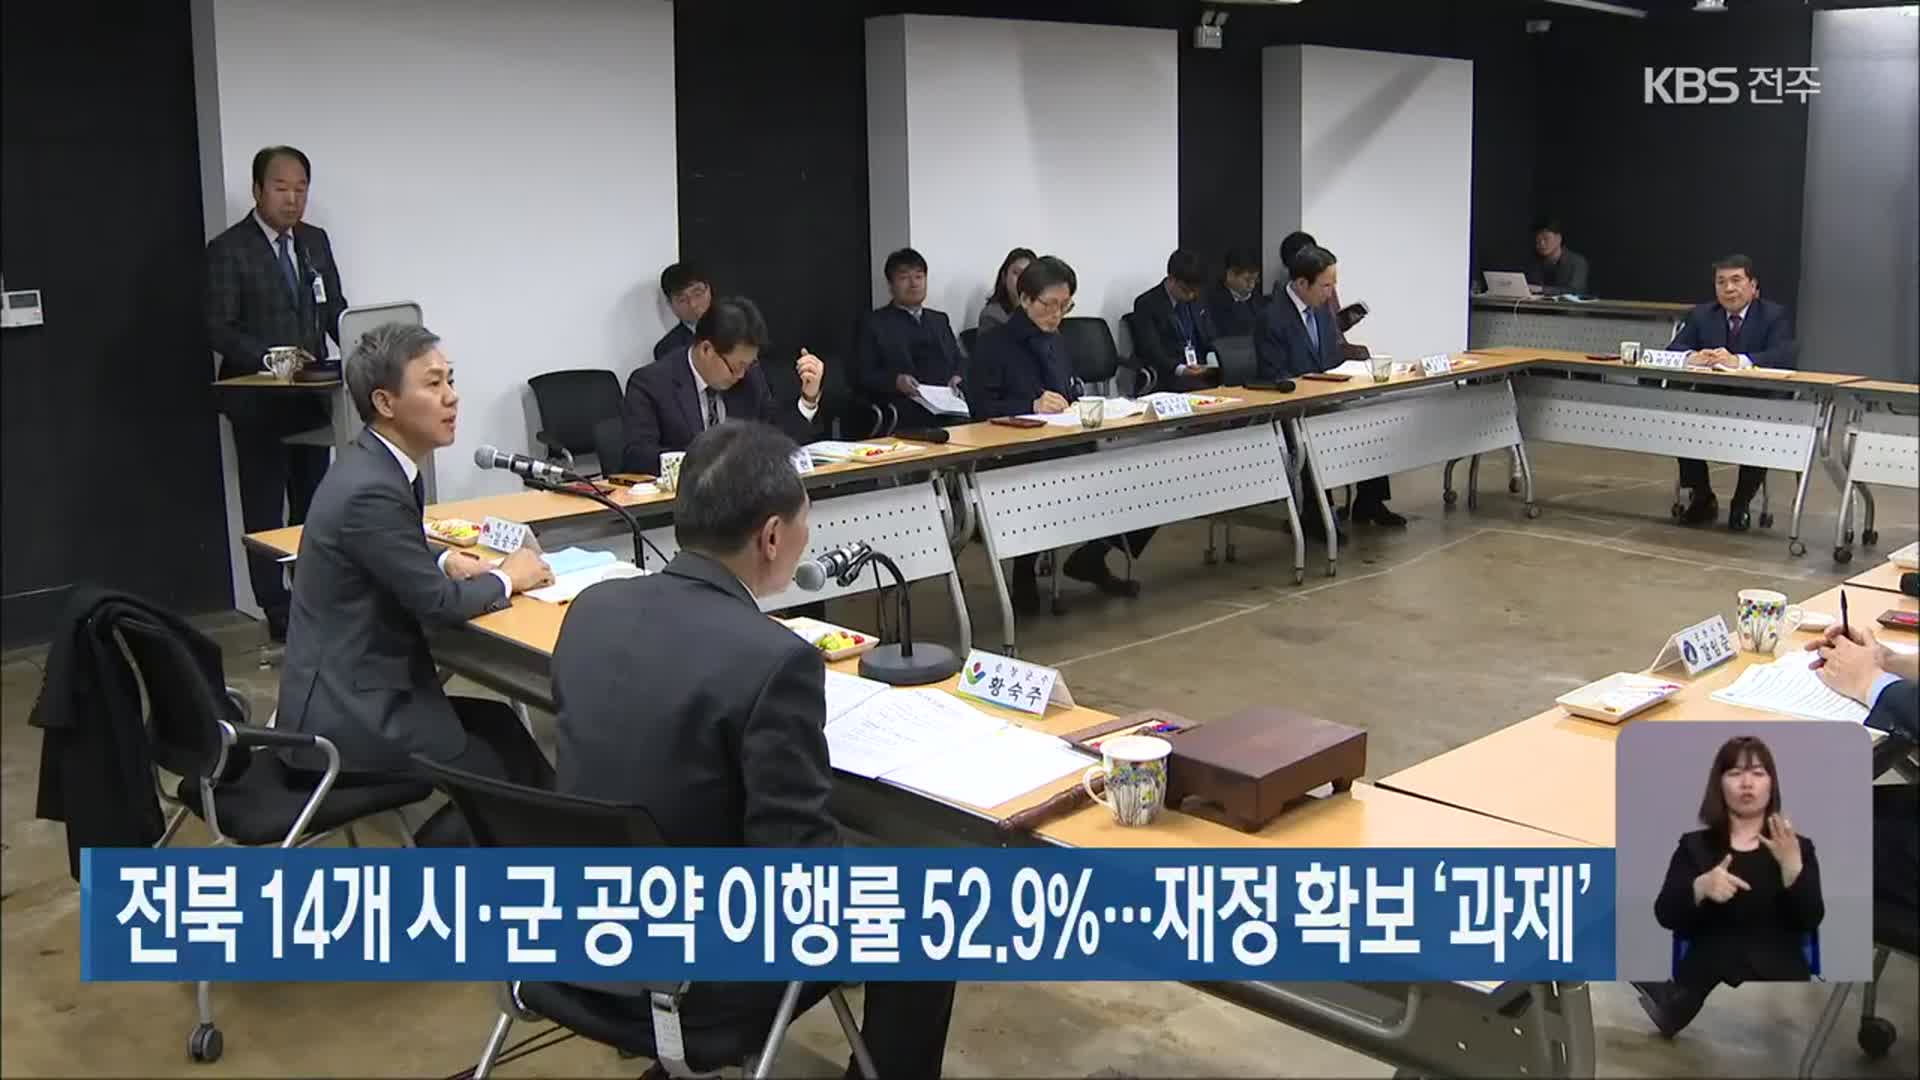 전북 14개 시·군 공약 이행률 52.9%…재정 확보 ‘과제’